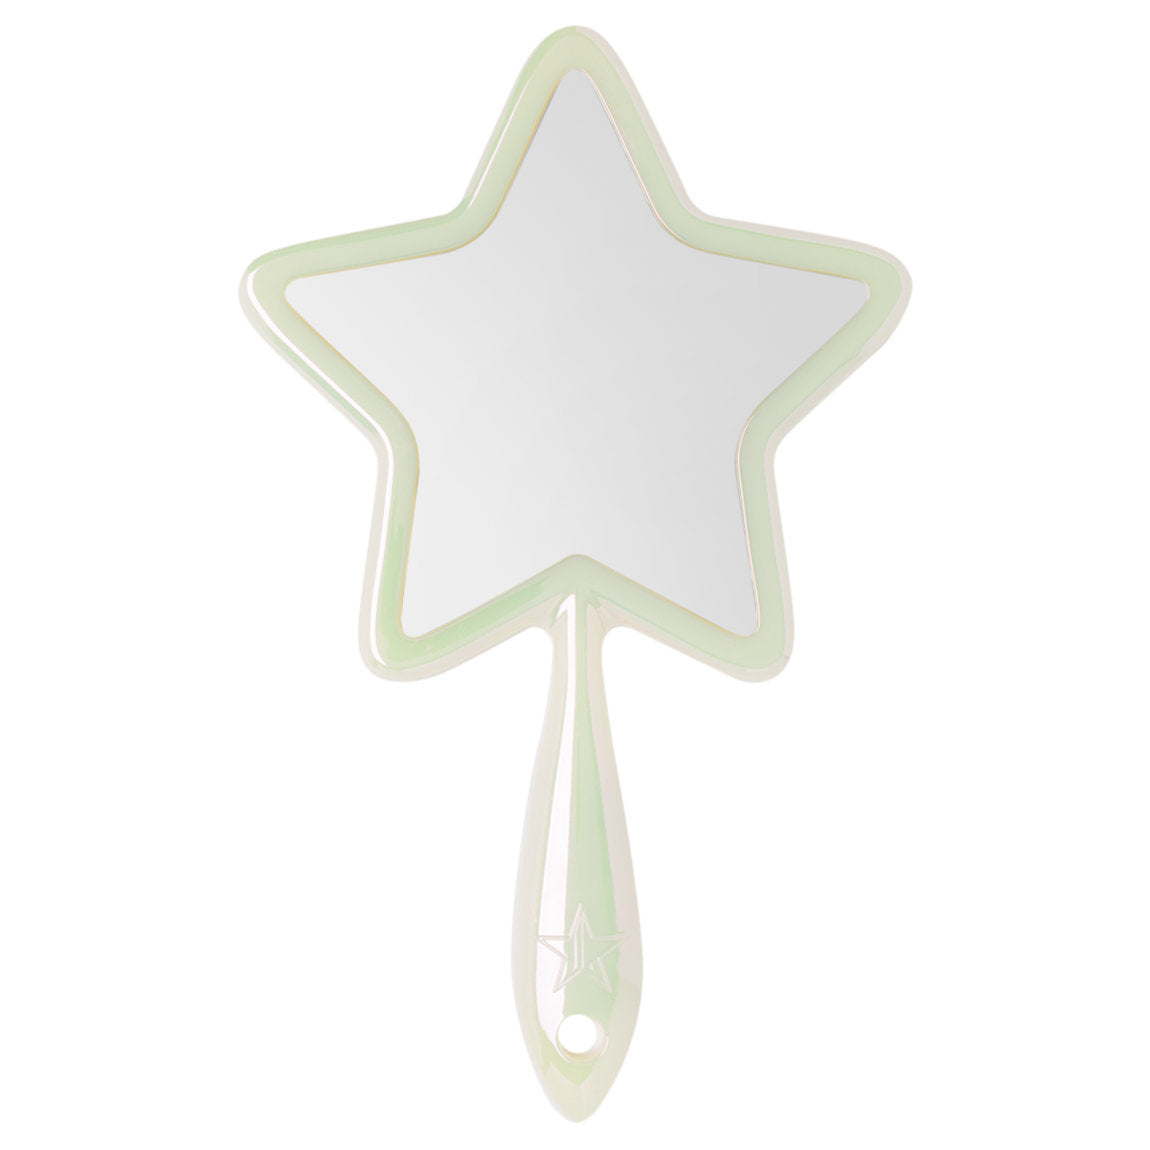 Hand Mirrors - Iridescent White Jeffree Star Cosmetics